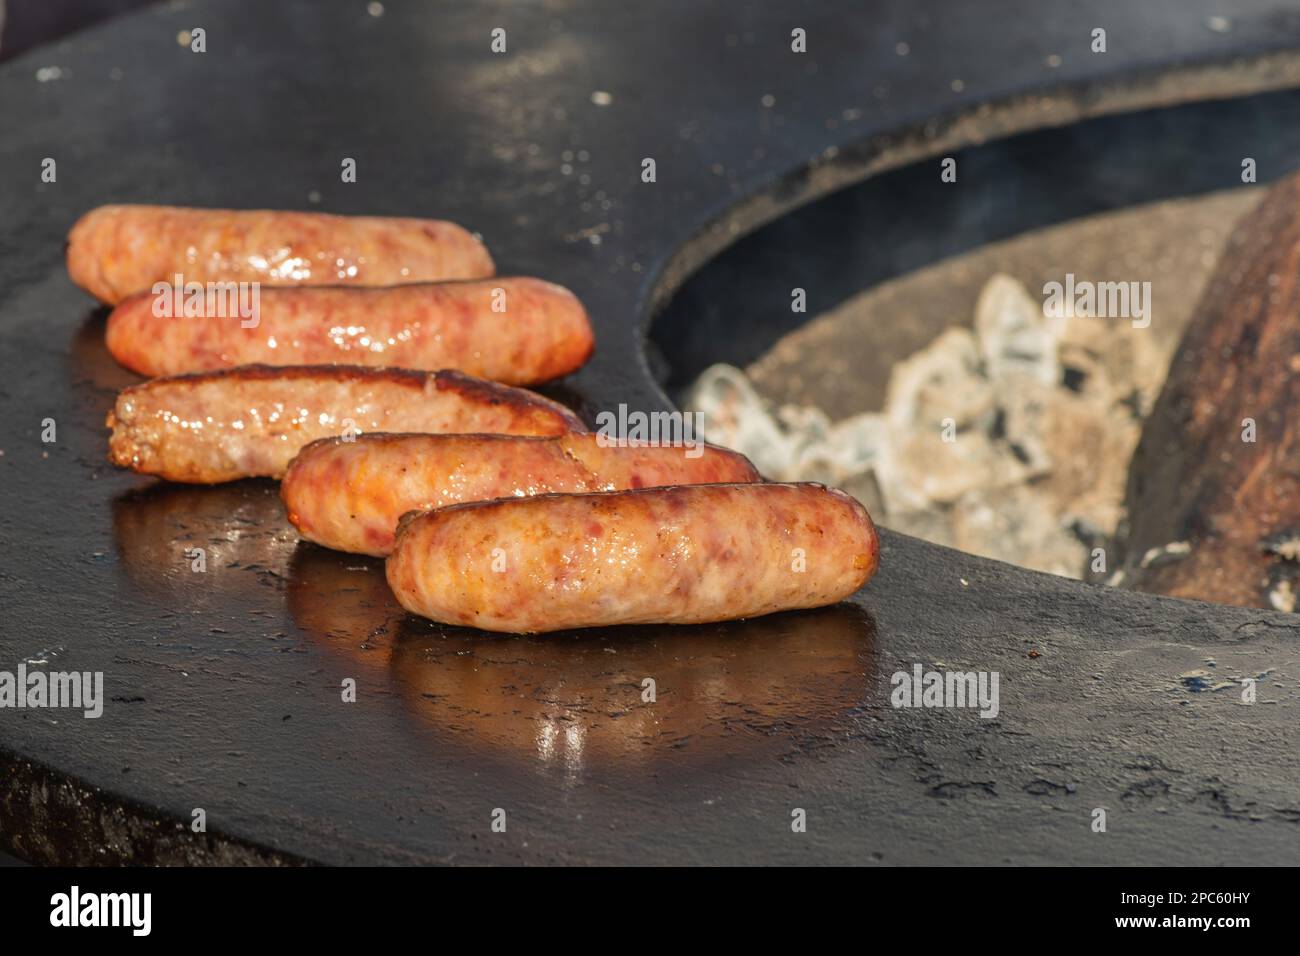 Salsicce di maiale pronte da mangiare, grigliate o arrostite in un barbecue su un fuoco aperto e fiamme, in un mercato di cibo di strada o un picnic all'aperto, primo piano Foto Stock